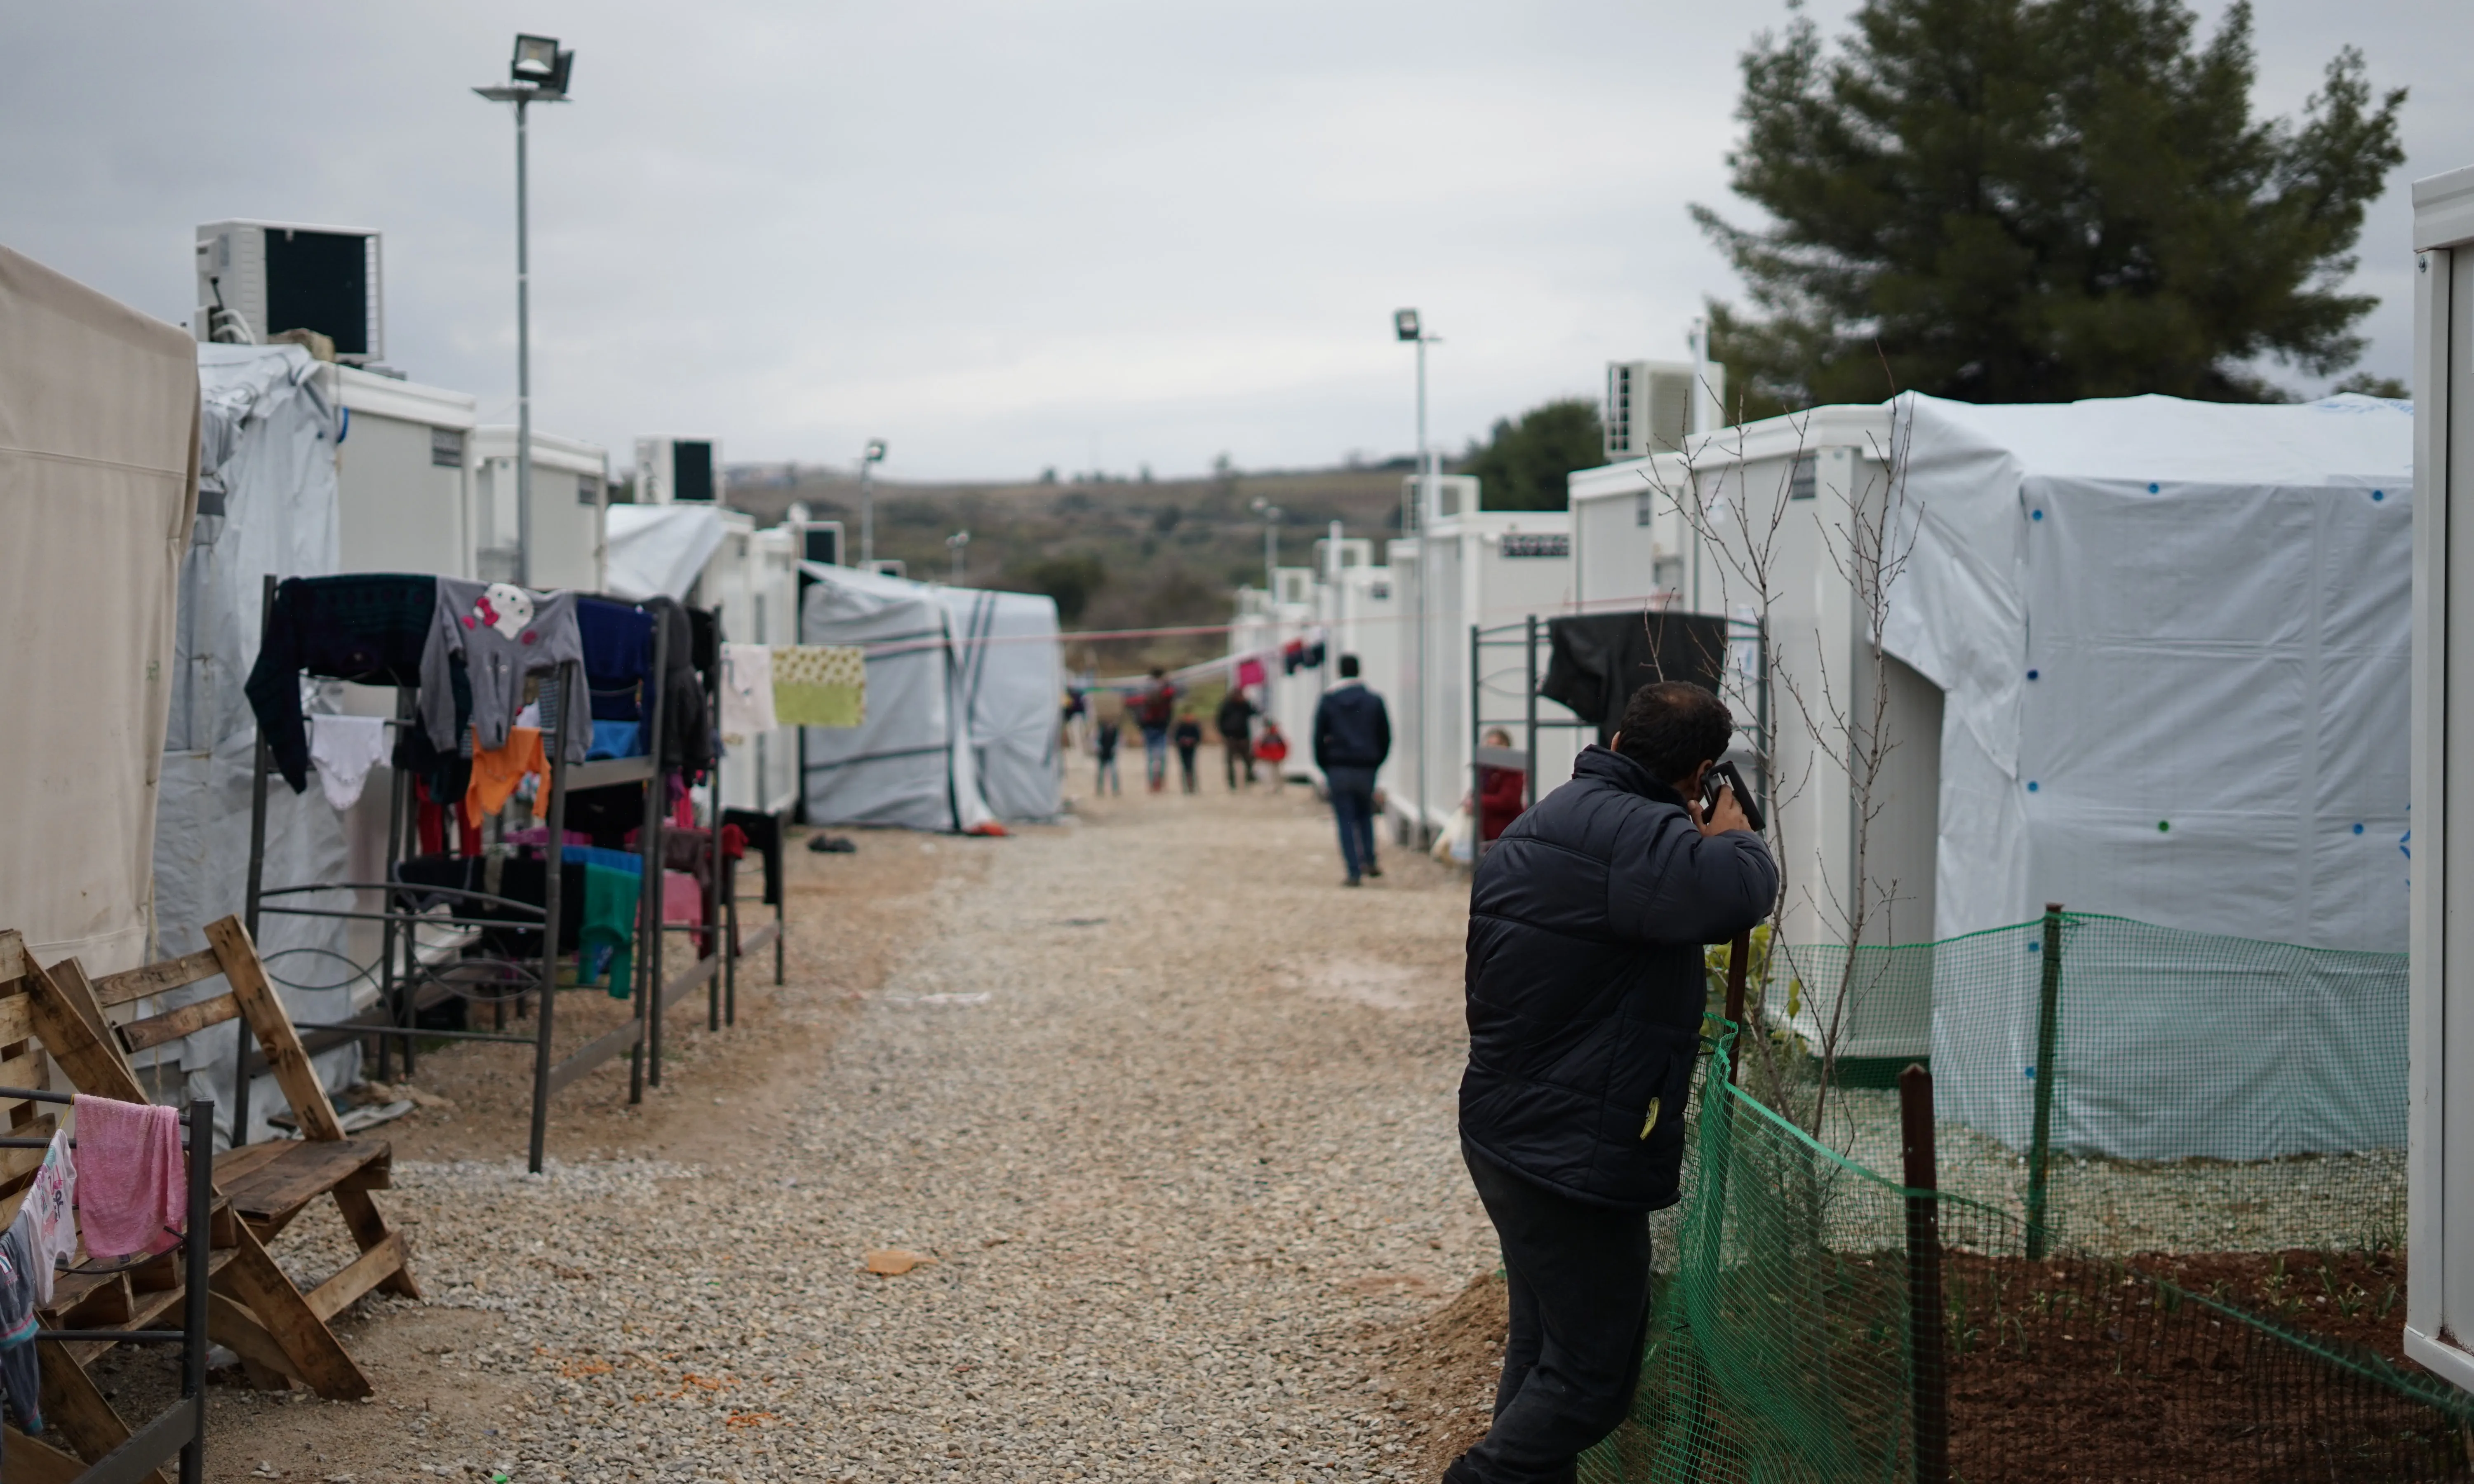 Milers de persones es veuen forçades a viure en camps de persones refugiades en el seu camí cap a Europa.